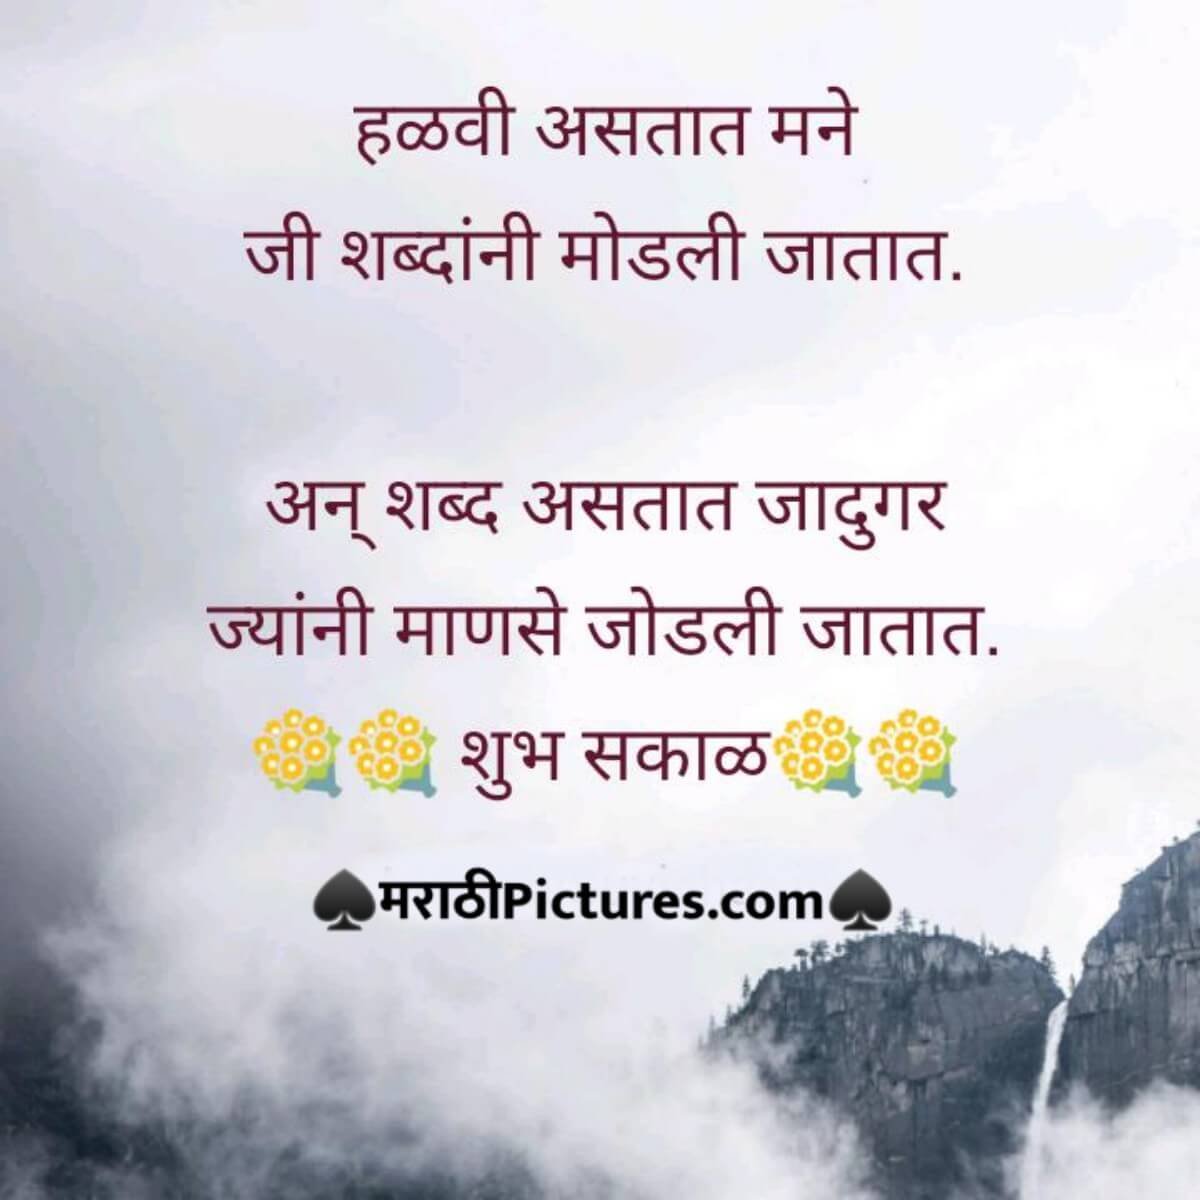 Shubh Sakal Message In Marathi Language For Whatsapp